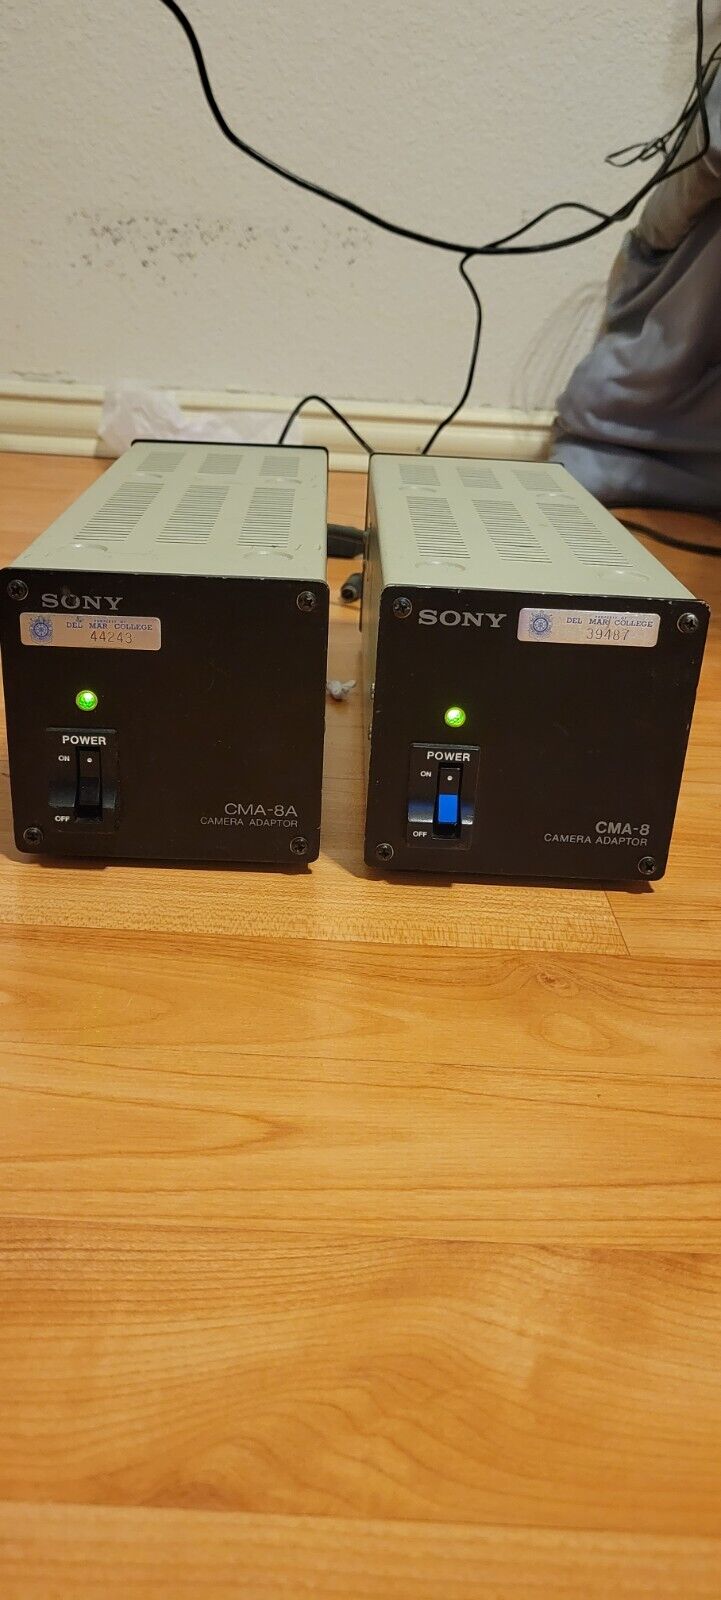 Sony Cma-8a And Cma-8 Camera Adaptor